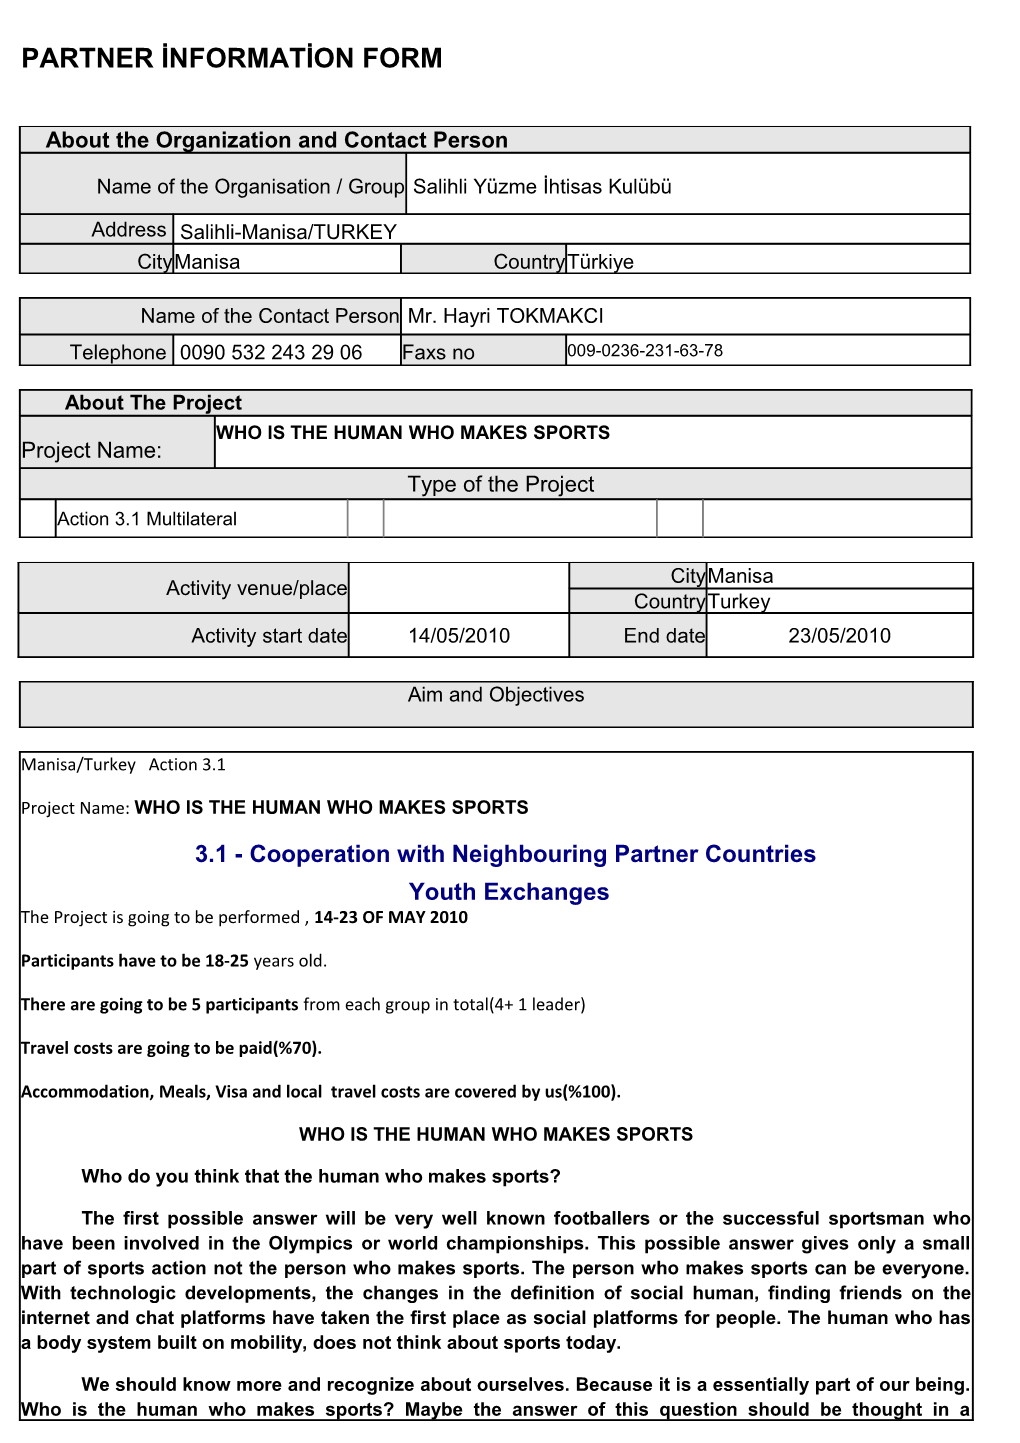 Partner Information Form